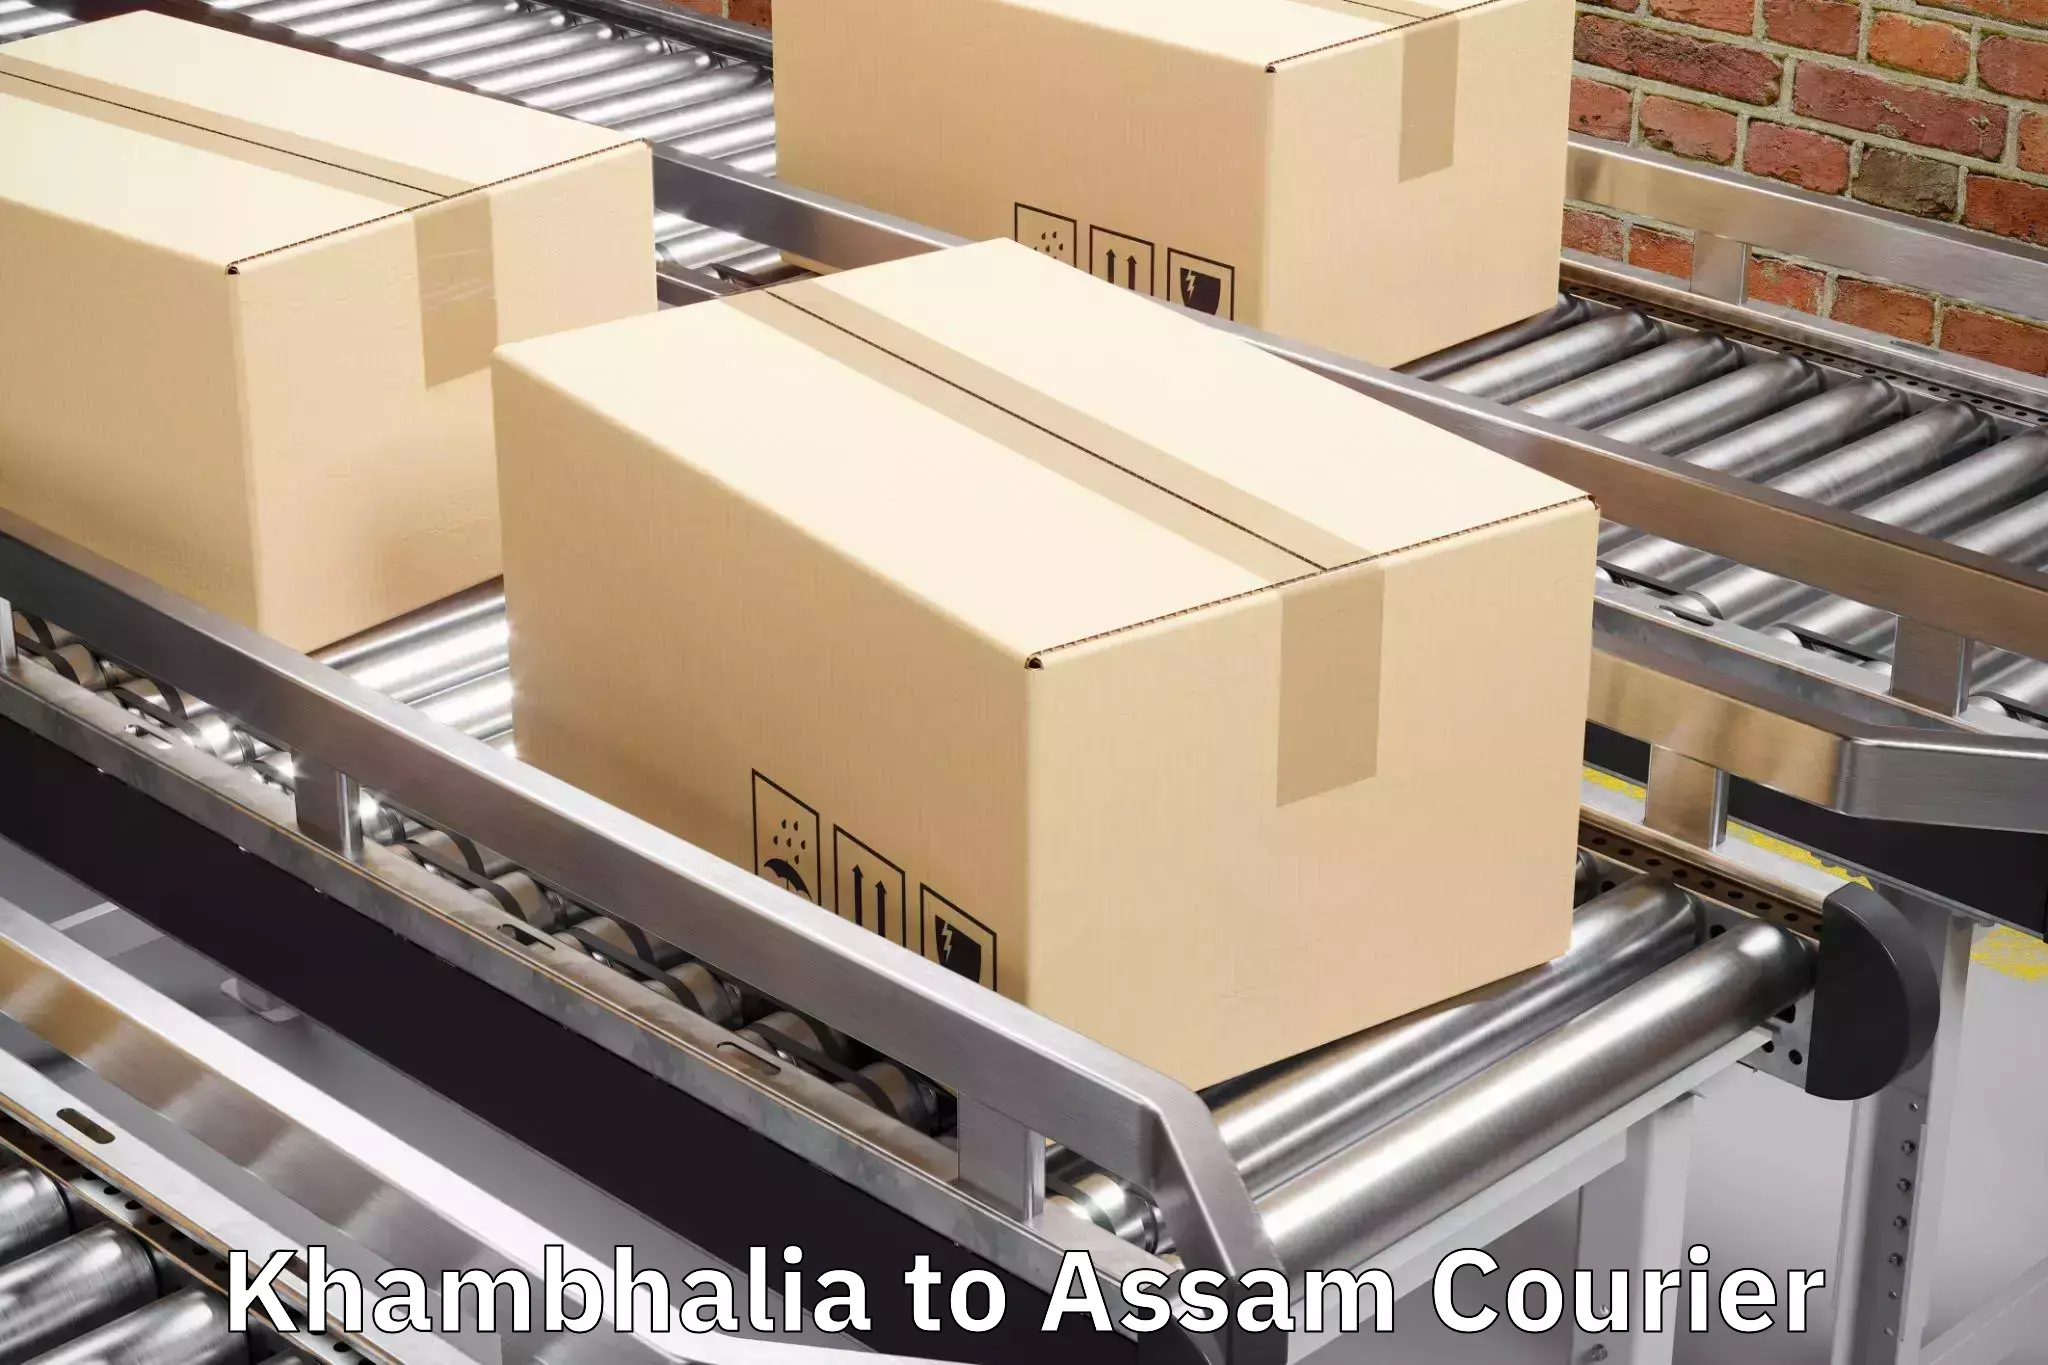 Luggage transport company Khambhalia to Bokolia